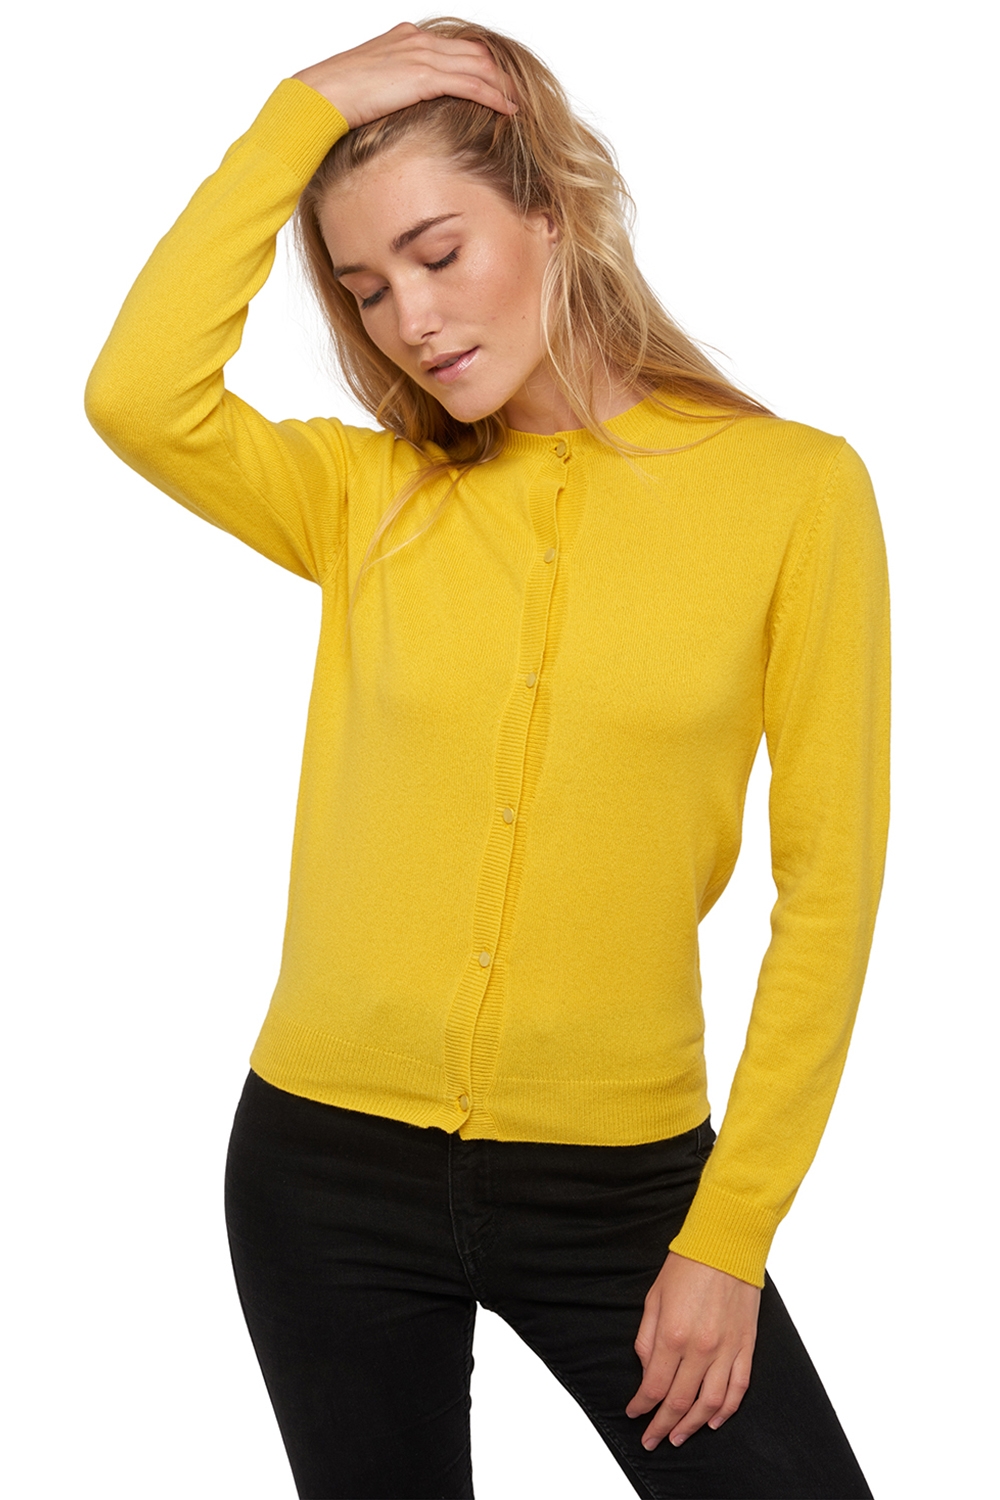 Kasjmier dames kasjmier basic pullovers voor lage prijzen tyra first sunny yellow 2xl